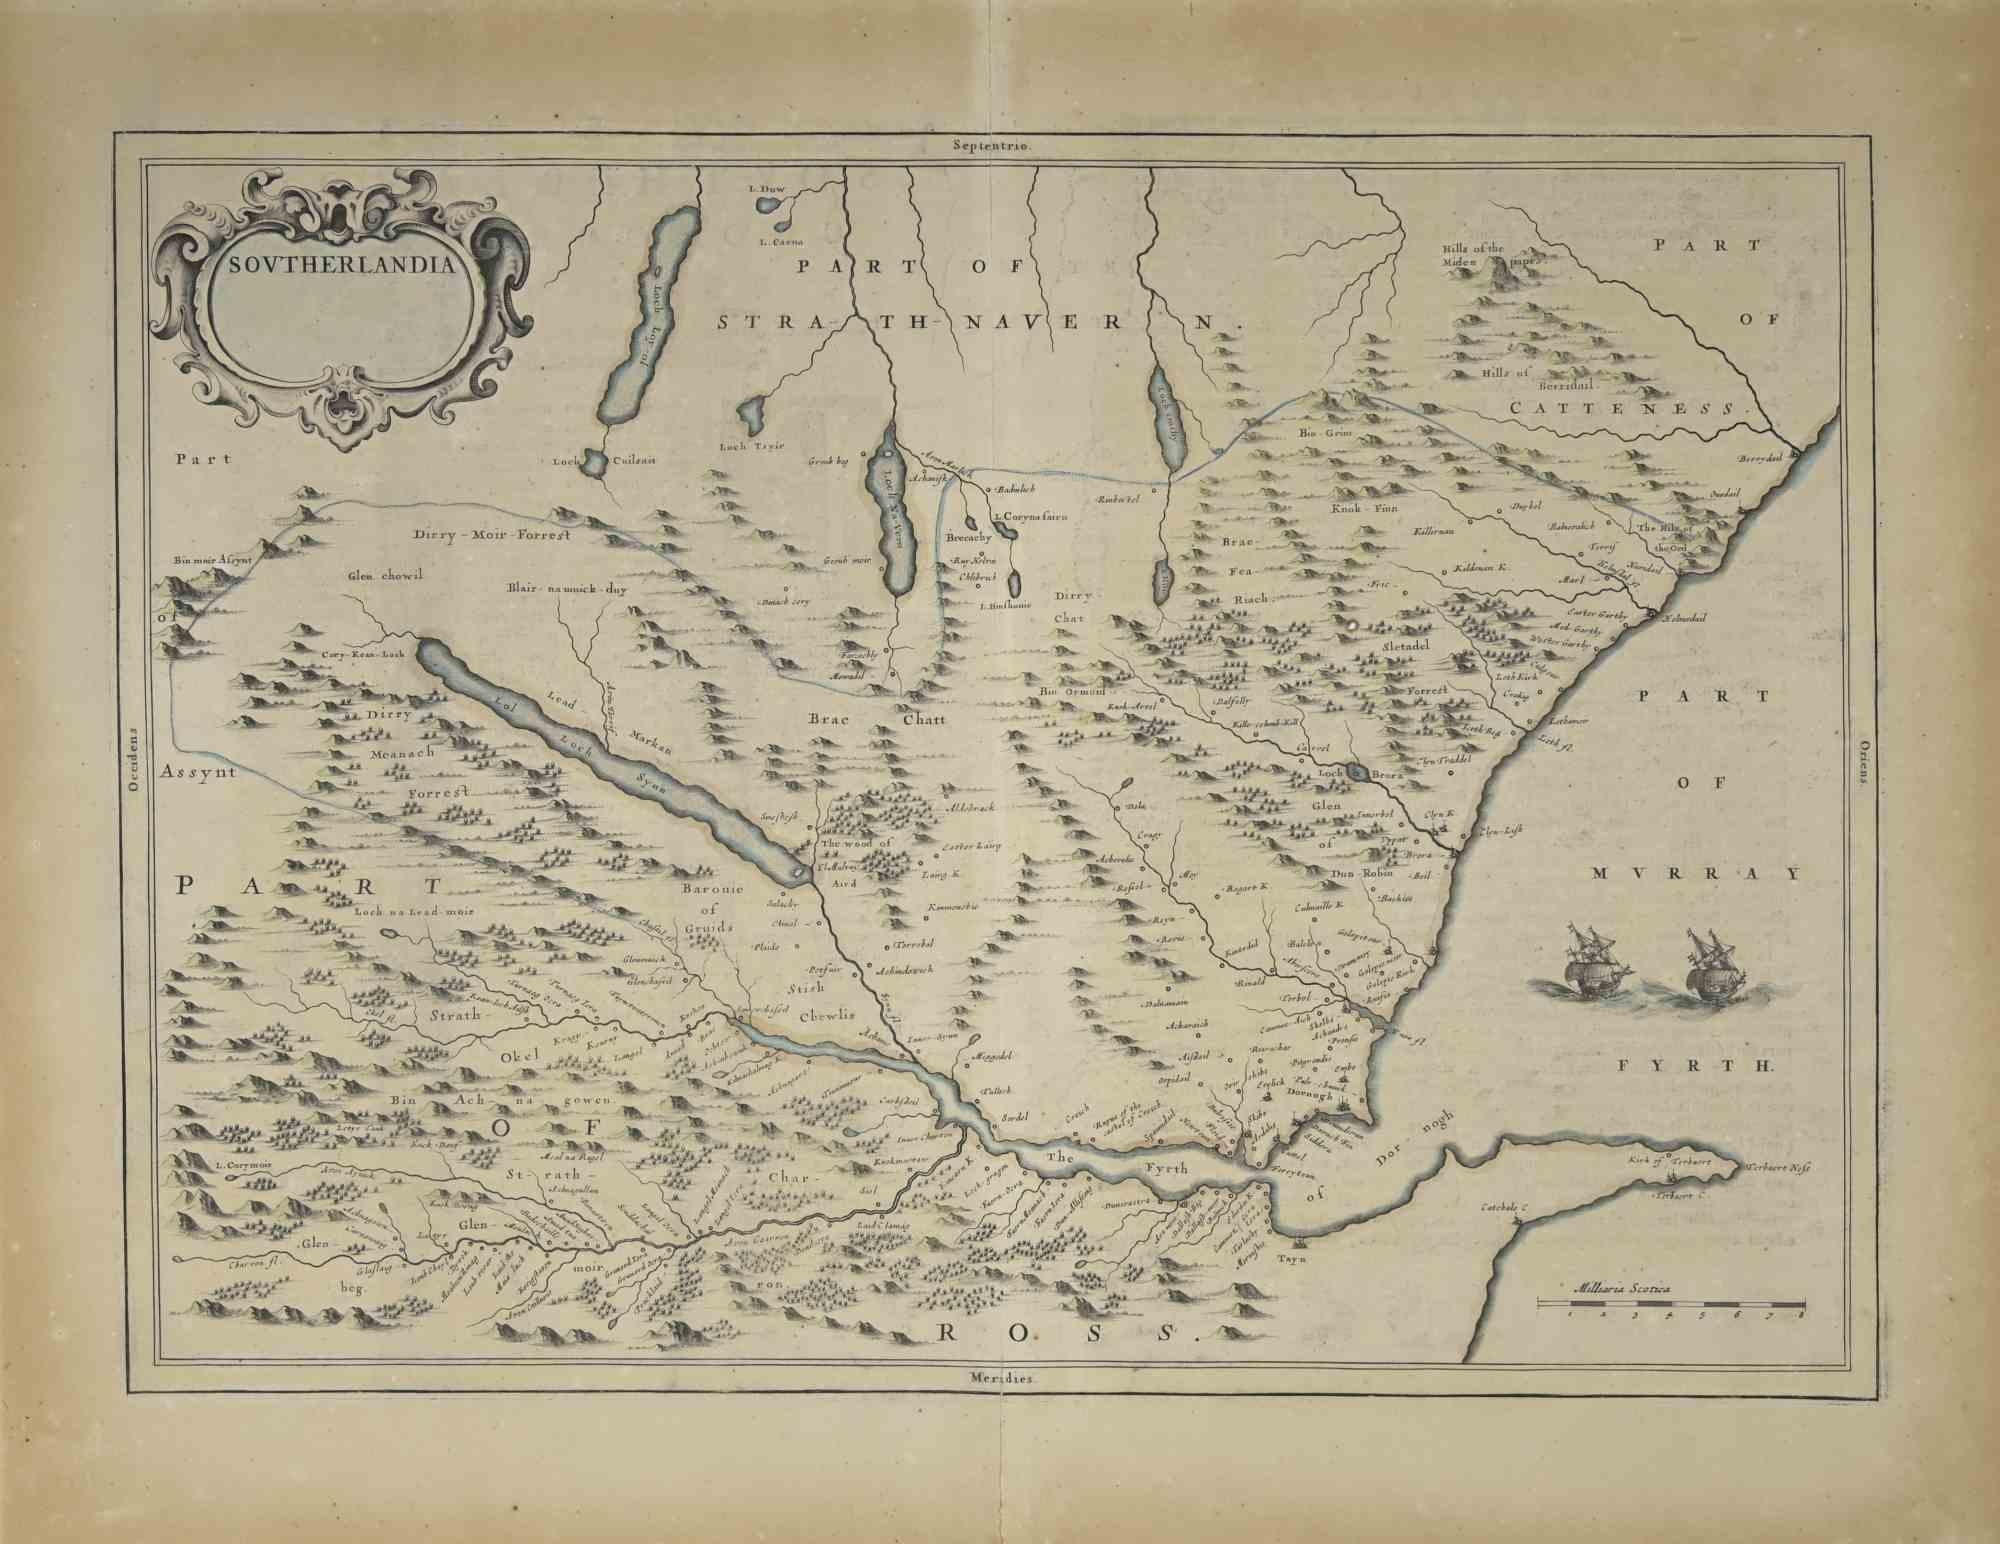 La carte de l'Écosse est une carte géographique réalisée par Johannes Blaeu.

Gravure à l'eau-forte, imprimée en 1660 ca.

Gravure sur cuivre, coloriée (coloriage coeval), sur papier, avec pliure centrale ;

Texte en latin. Dimensions visuelles 47,5